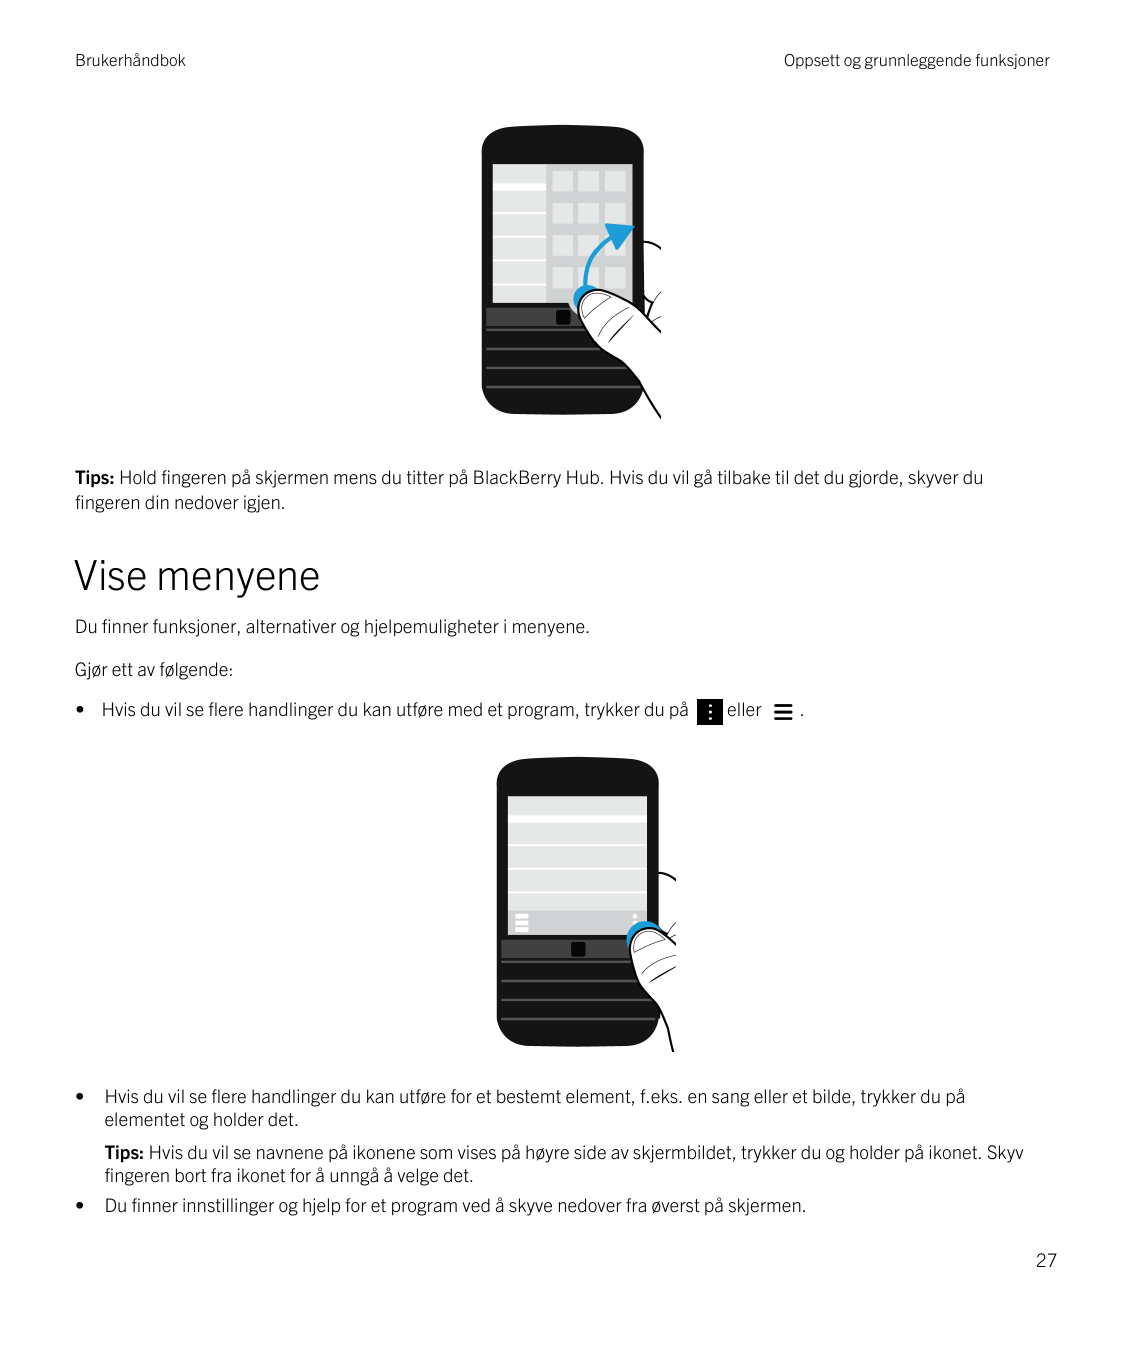 BrukerhåndbokOppsett og grunnleggende funksjonerTips: Hold fingeren på skjermen mens du titter på BlackBerry Hub. Hvis du vil gå